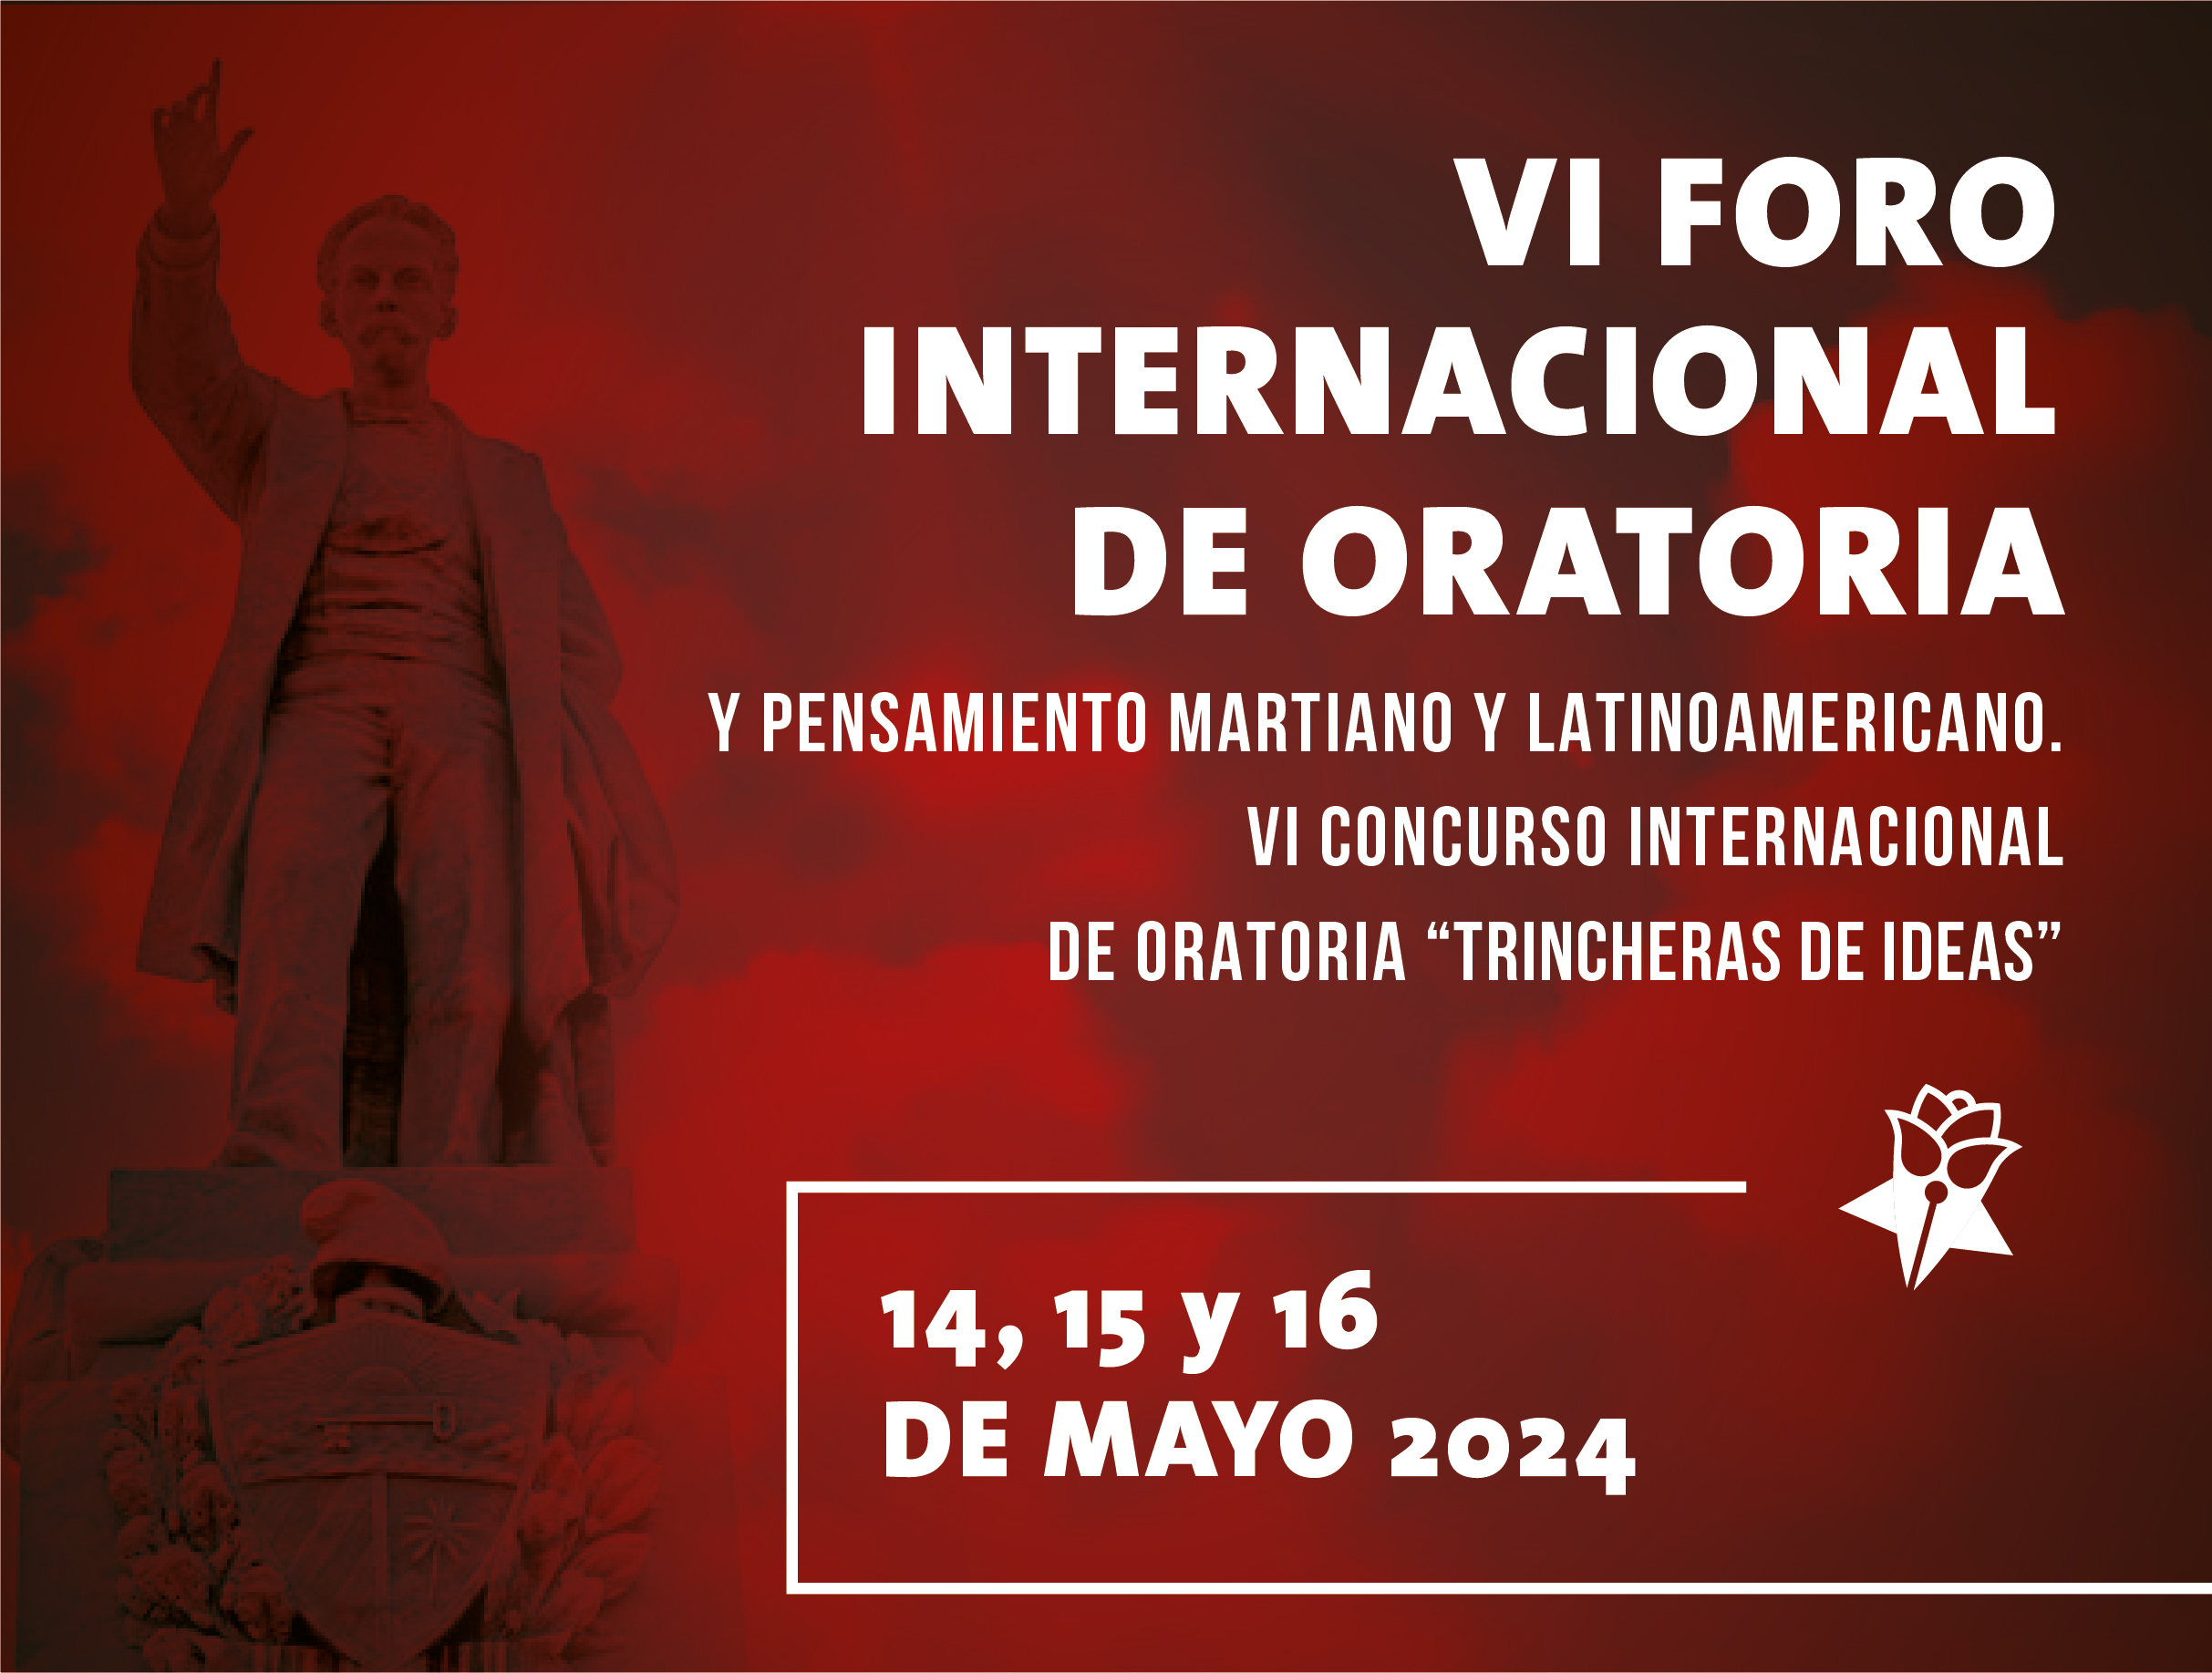 Eventos en Cuba - VI Foro Internacional de Oratoria, Pensamiento Martiano y Latinoamericano y VI Concurso Internacional de Oratoria “Trincheras de Ideas 2024”